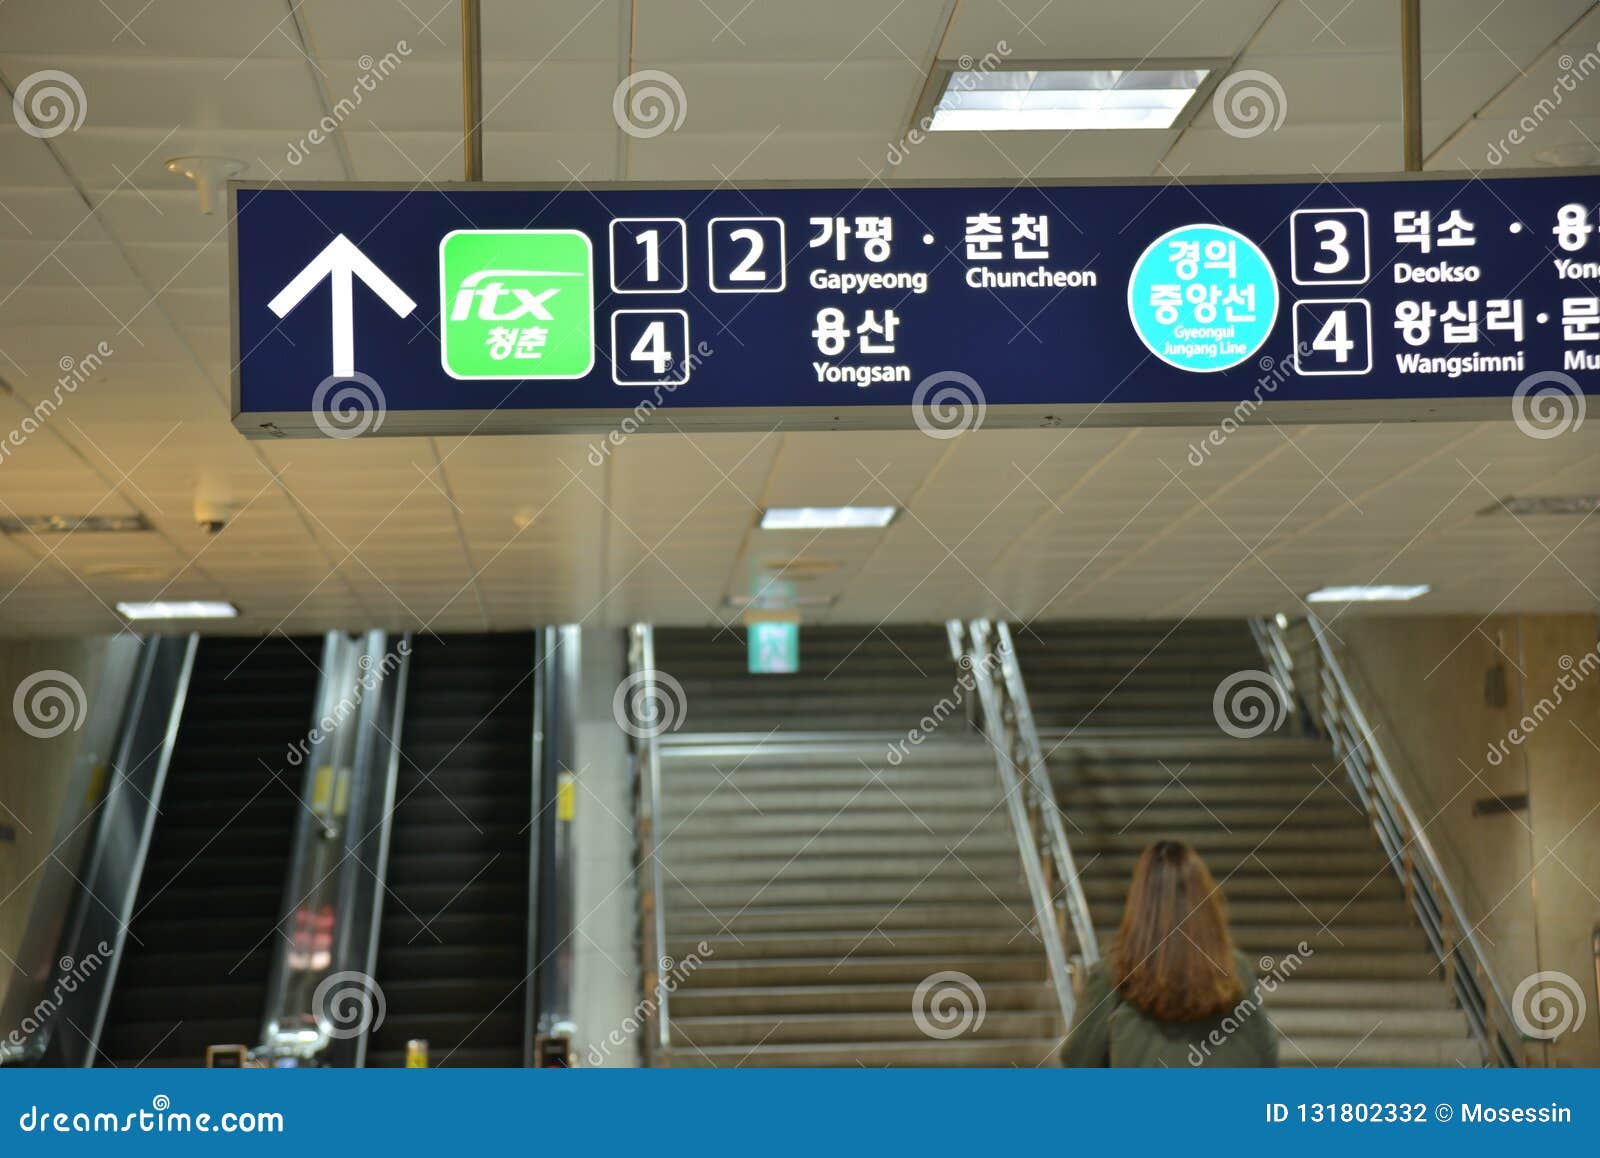 Señalización de la dirección de la estación de metro de Corea Seúl. Tablero de la señalización de la estación de metro de Corea Seúl